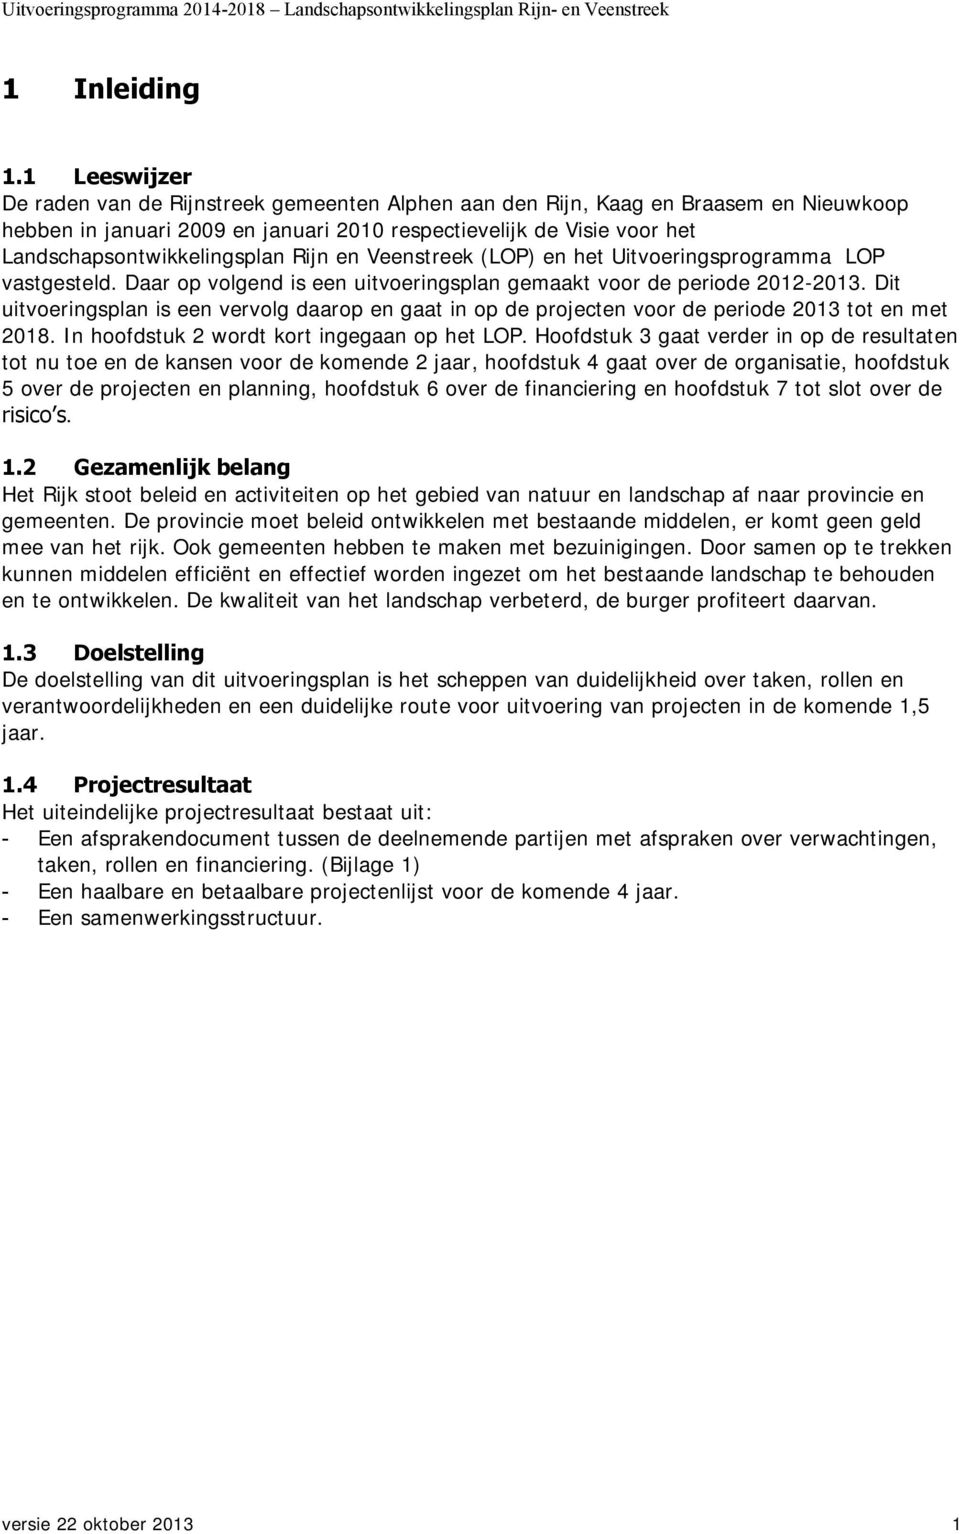 Landschapsontwikkelingsplan Rijn en Veenstreek (LOP) en het Uitvoeringsprogramma LOP vastgesteld. Daar op volgend is een uitvoeringsplan gemaakt voor de periode 2012-2013.